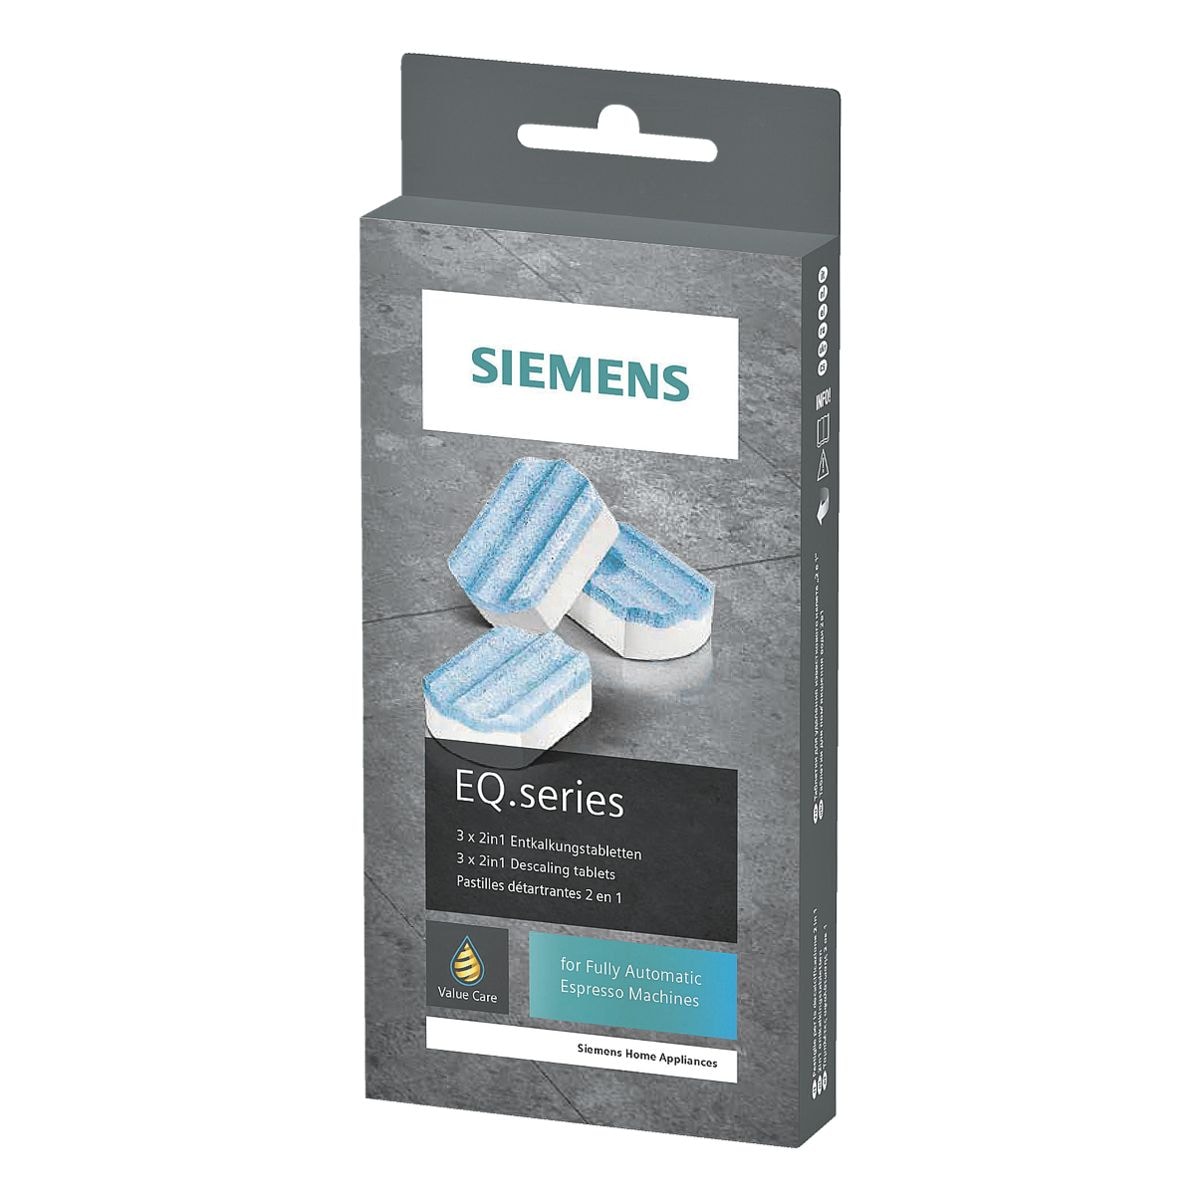 Siemens 2in1 Entkalkungstabletten EQ.series